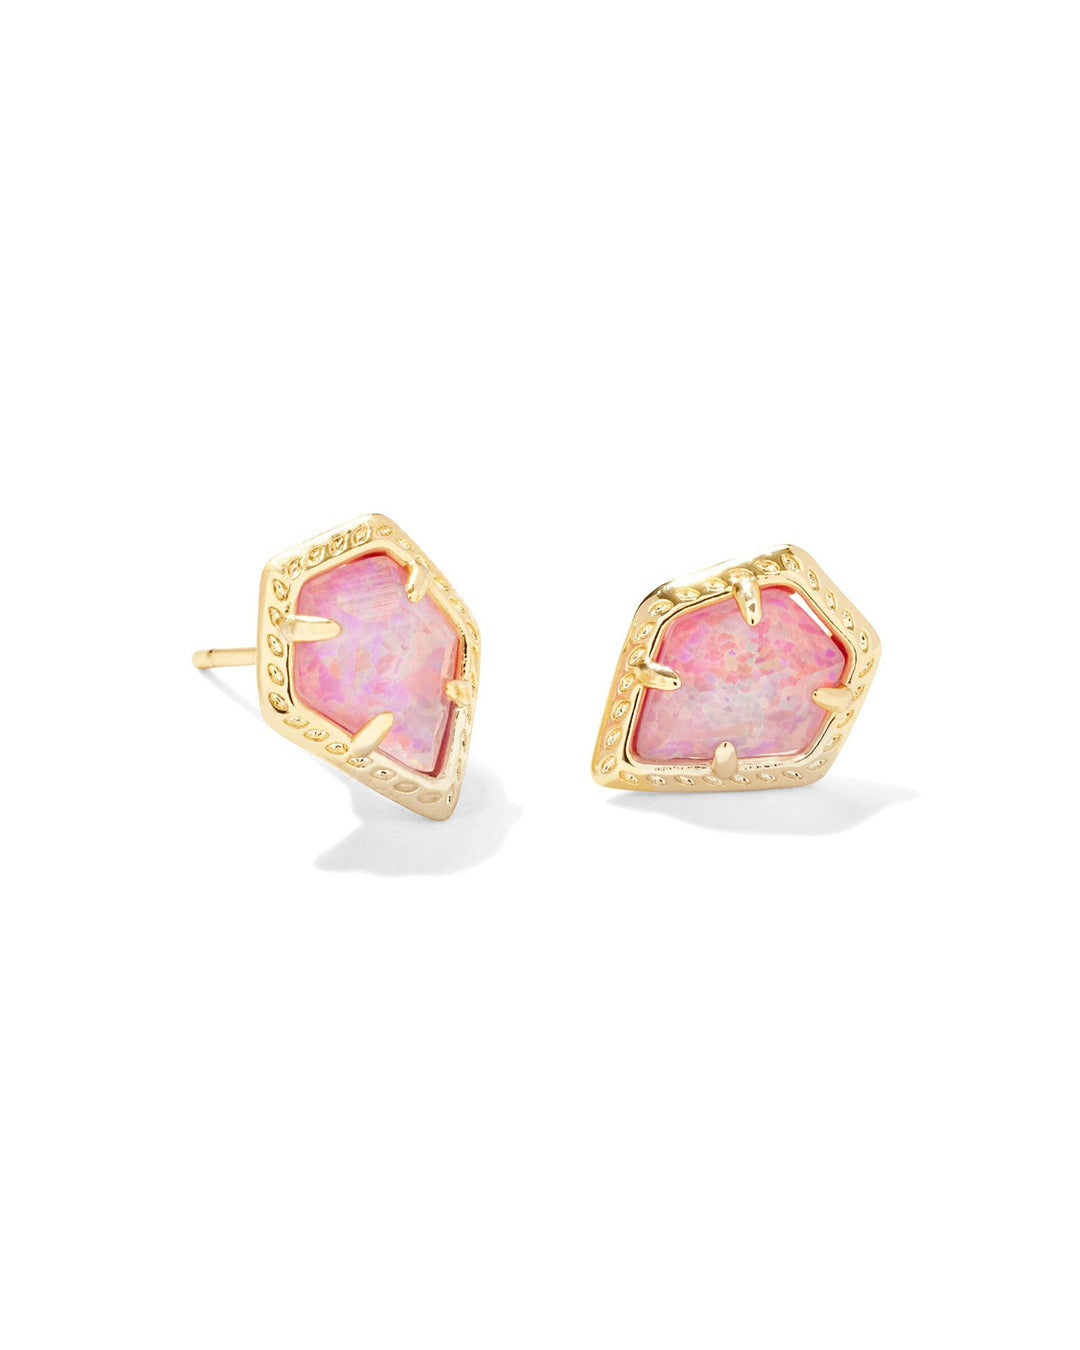 Kendra Scott Framed Tessa Stud Earring in Rose Pink Opal